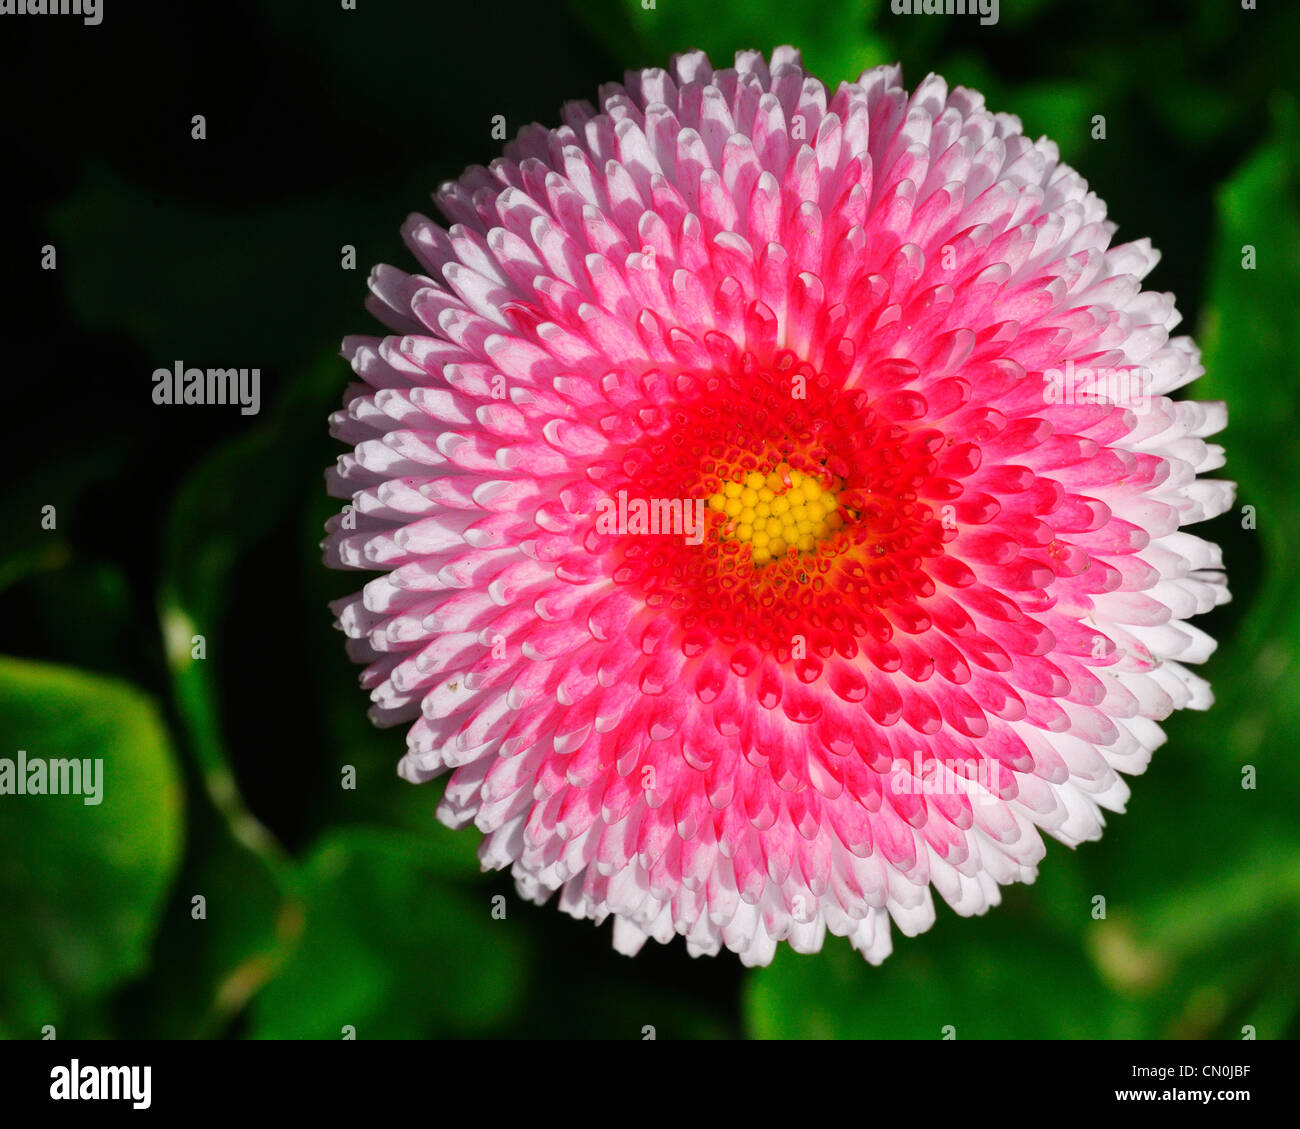 Eine rosa Englisch Daisy Blume (Asteraceae, Bellis Perennis) im Rose Garden  in Bern, Schweiz Stockfotografie - Alamy